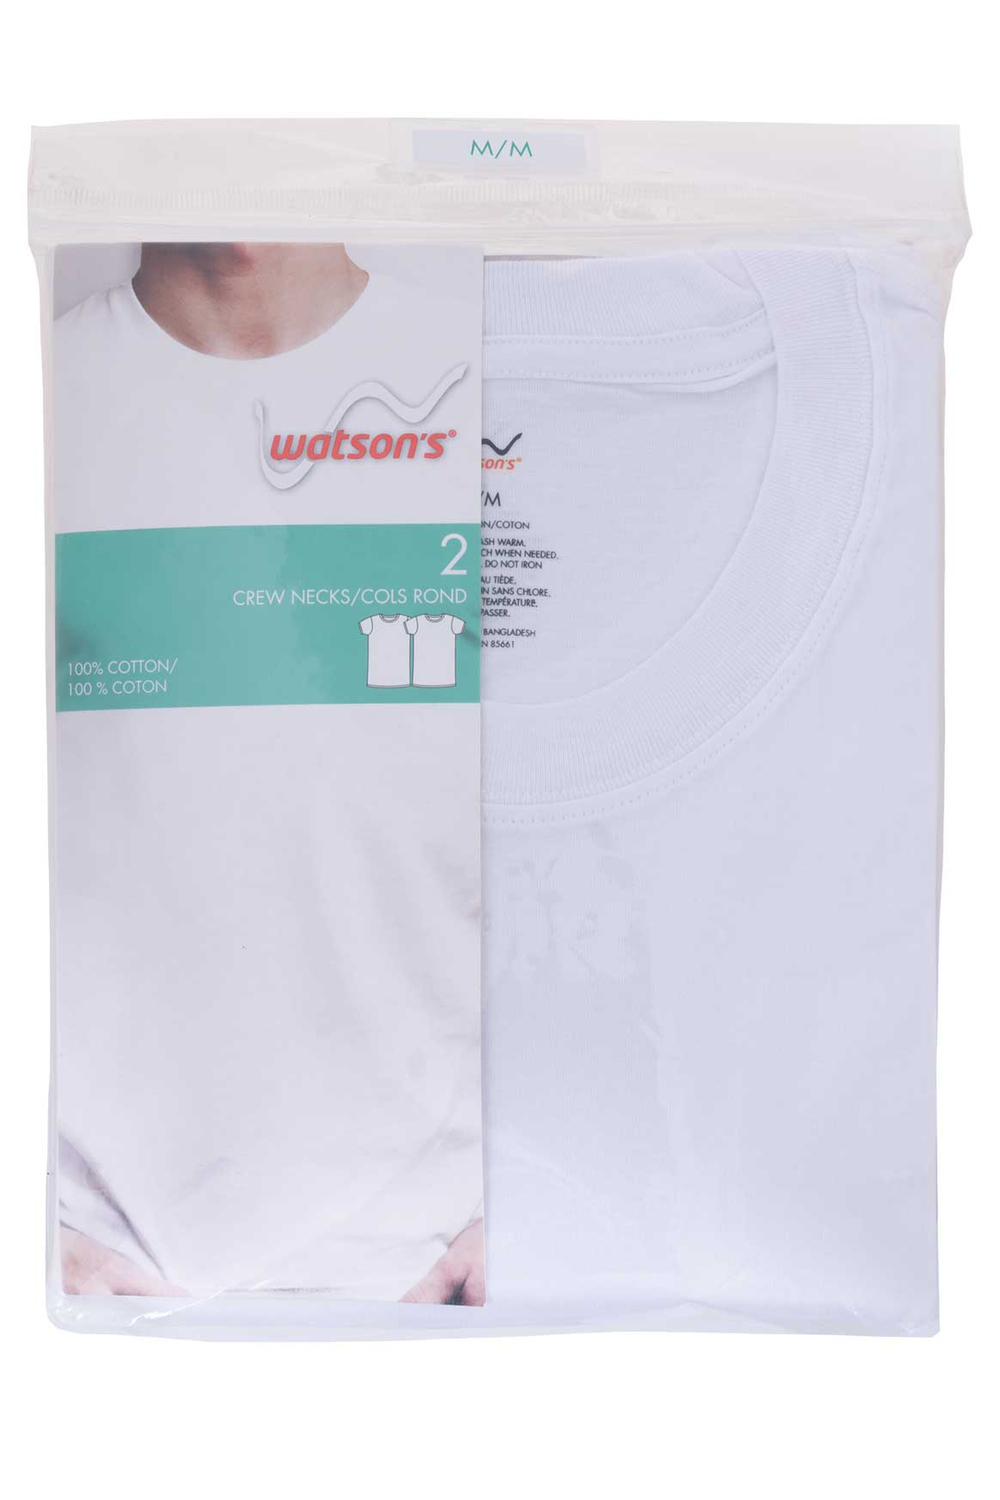 Watson's  - Paq. de 2 t-shirts cols ronds pour hommes à 100% coton, blanc, moyen (M)